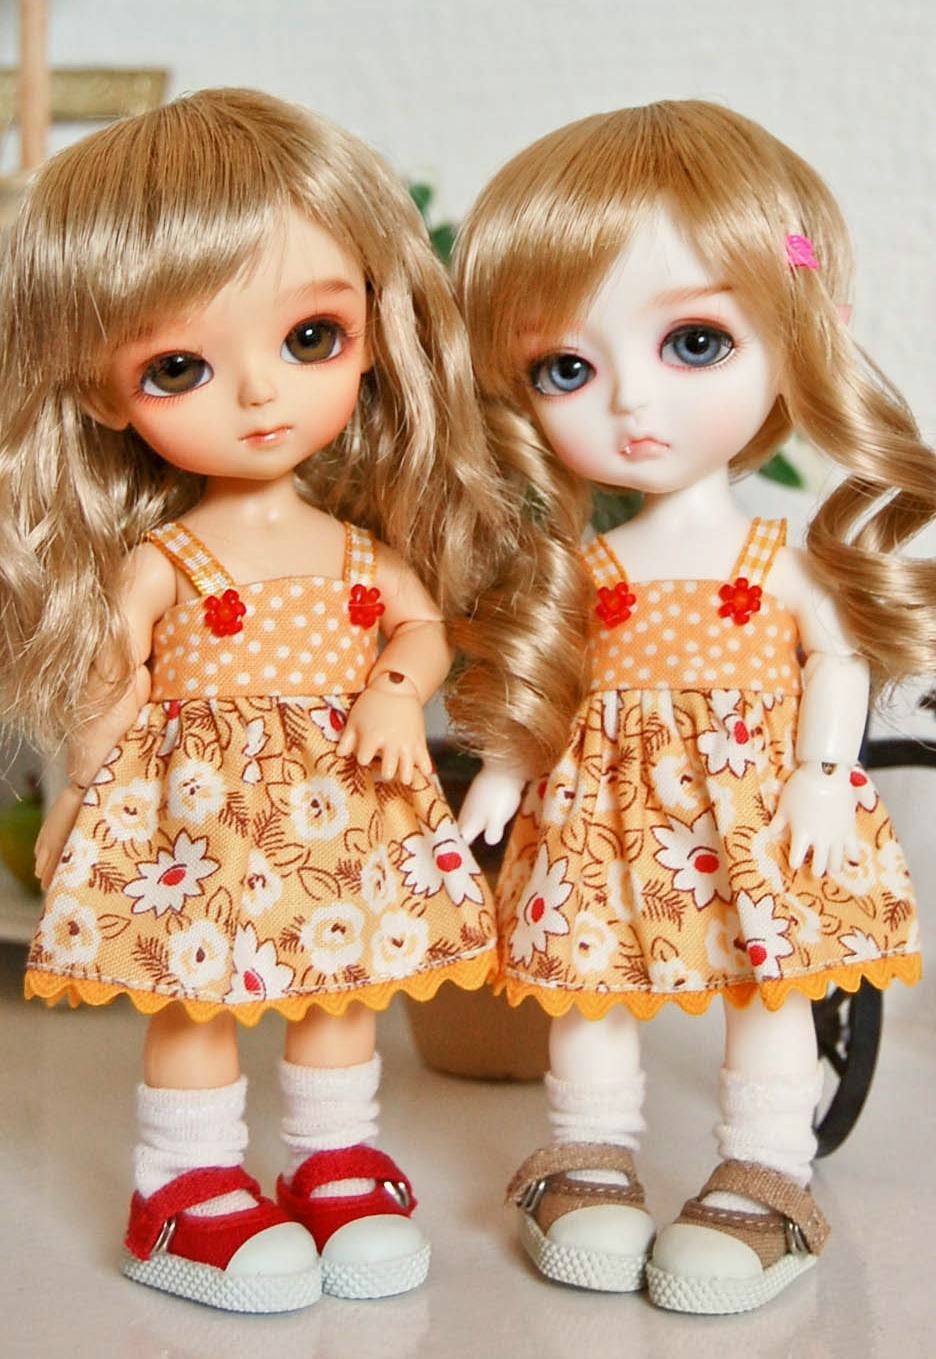 Cute Twins Barbie Dolls , HD Wallpaper & Backgrounds